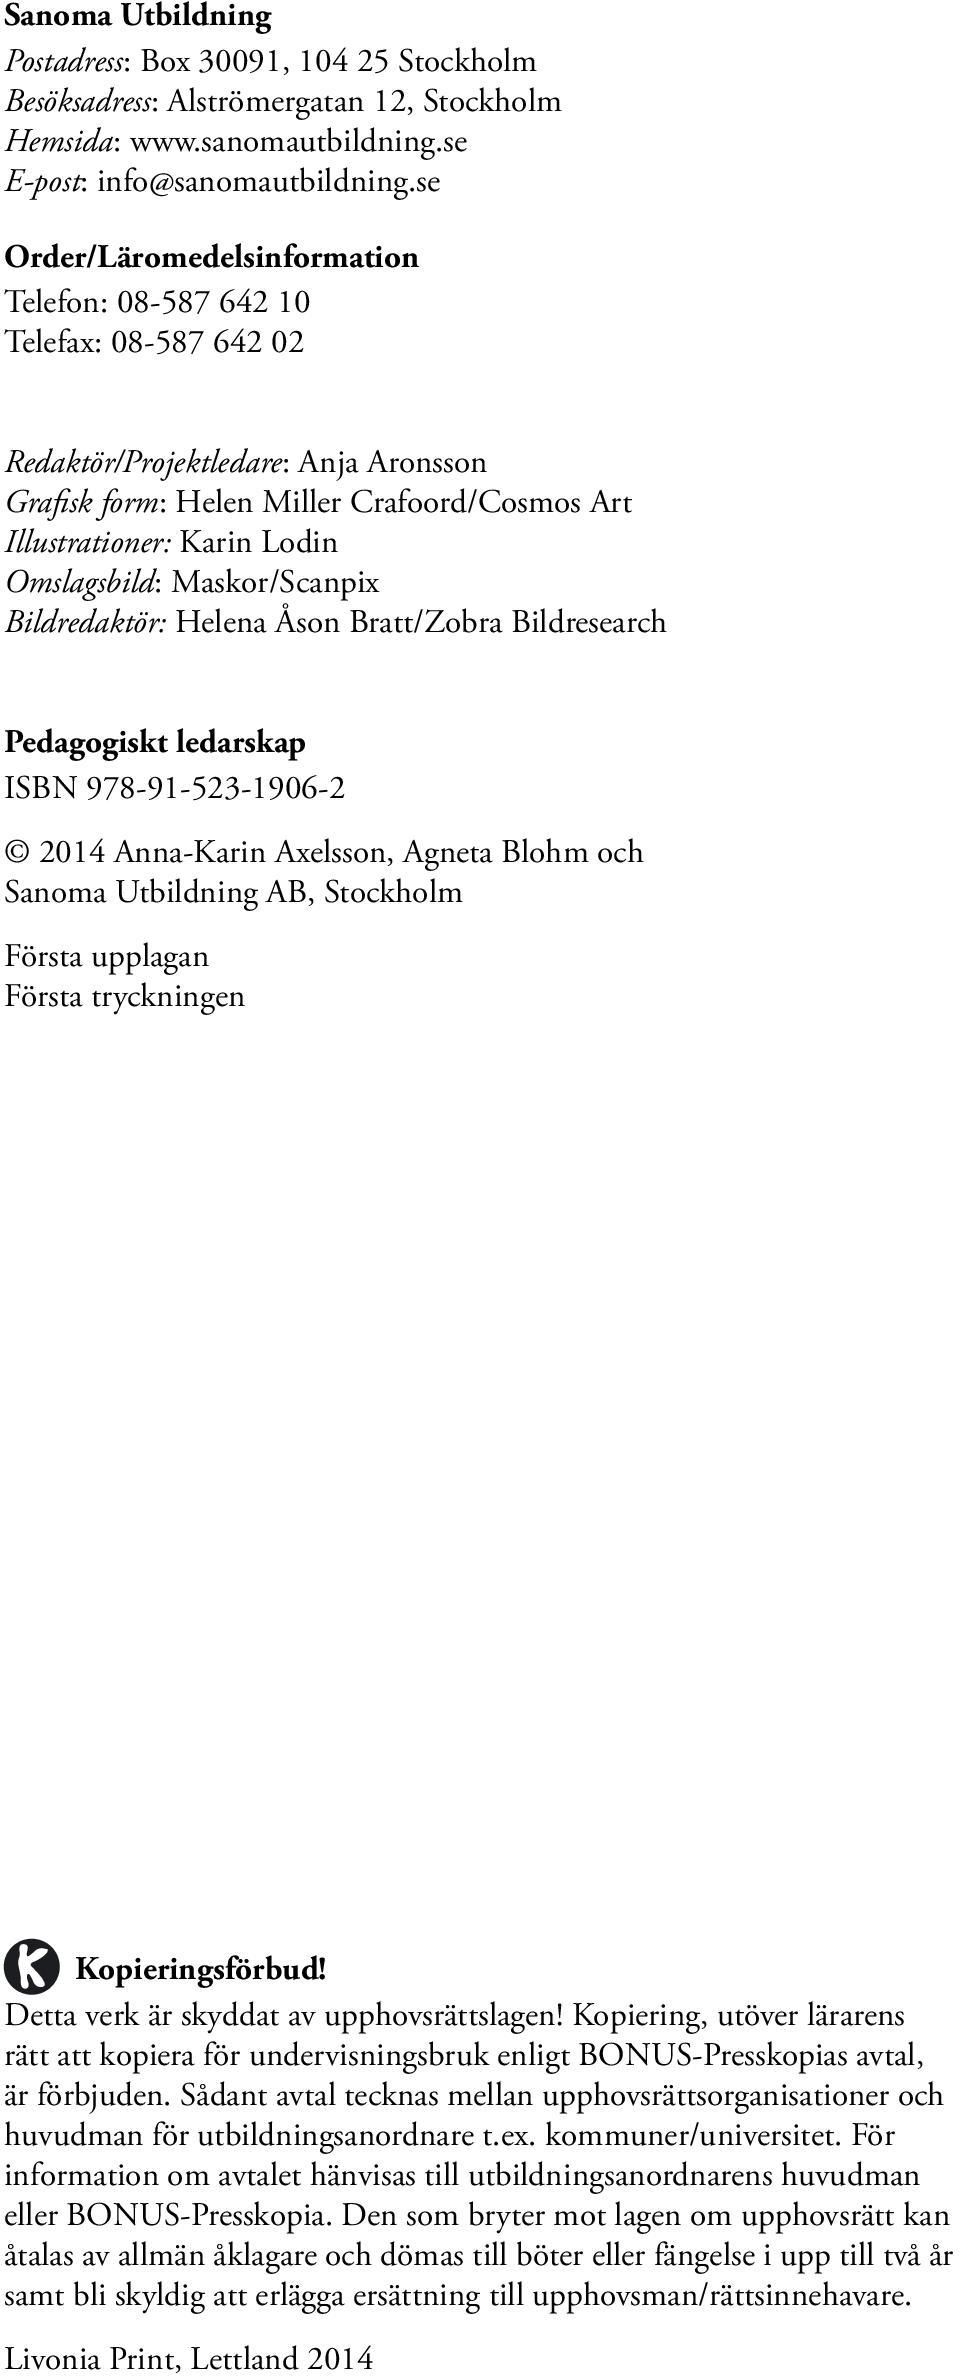 Omslagsbild: Maskor/Scanpix Bildredaktör: Helena Åson Bratt/Zobra Bildresearch Pedagogiskt ledarskap ISBN 978-91-523-1906-2 2014 Anna-Karin Axelsson, Agneta Blohm och Sanoma Utbildning AB, Stockholm